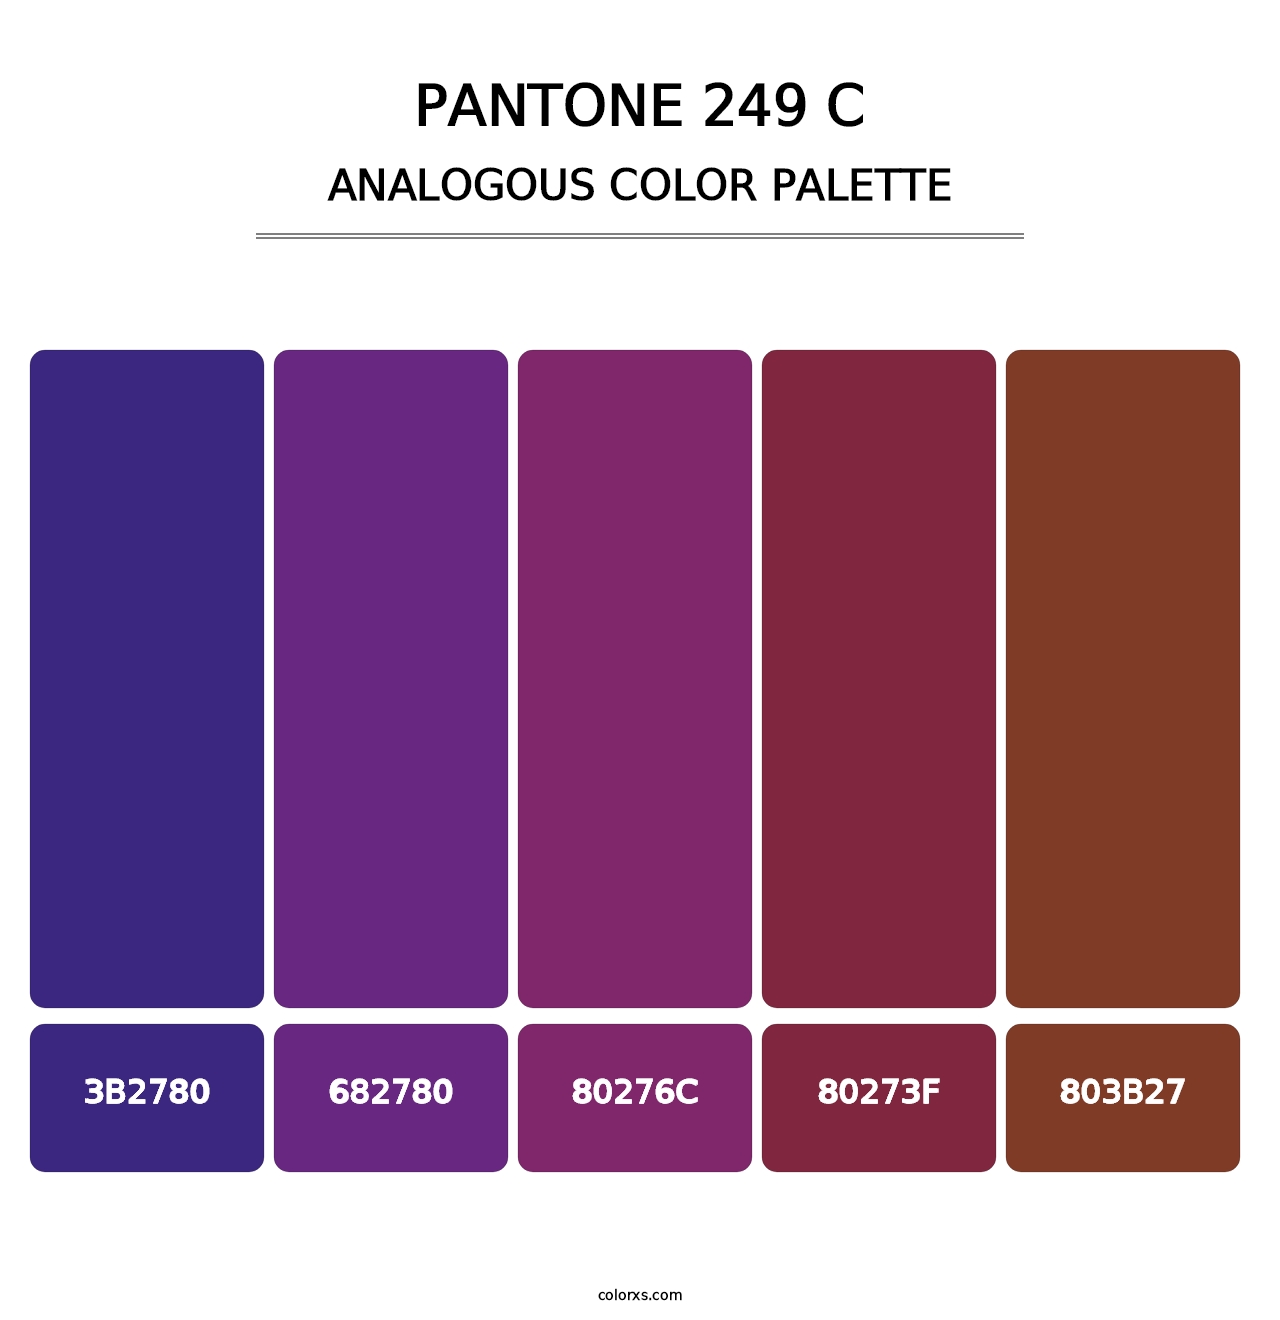 PANTONE 249 C - Analogous Color Palette